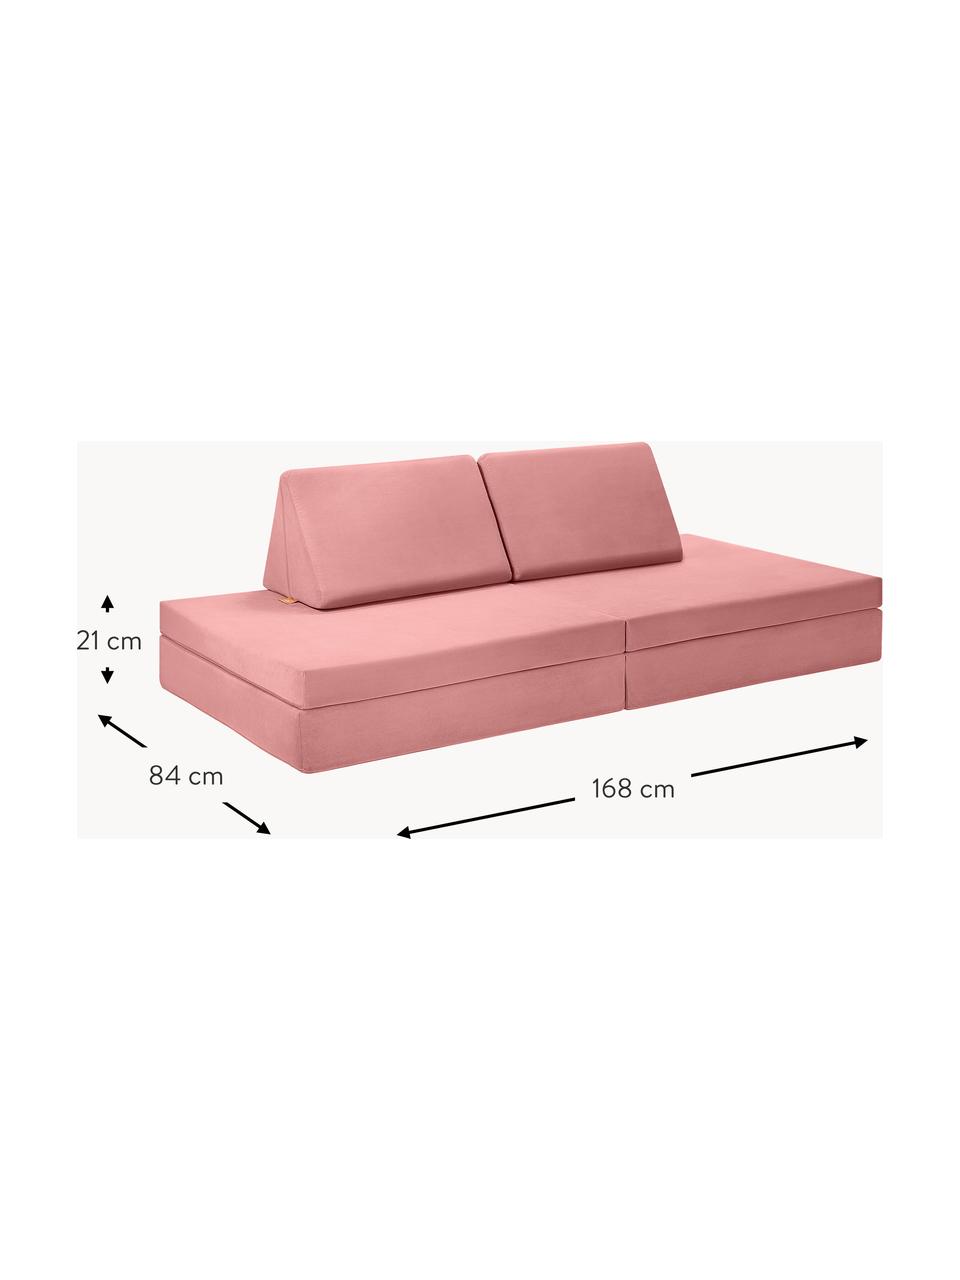 Ręcznie wykonana dziecięca sofa modułowa z aksamitu Mila, Tapicerka: aksamit (100% poliester), Brudnoróżowy aksamit, S 168 x G 84 cm